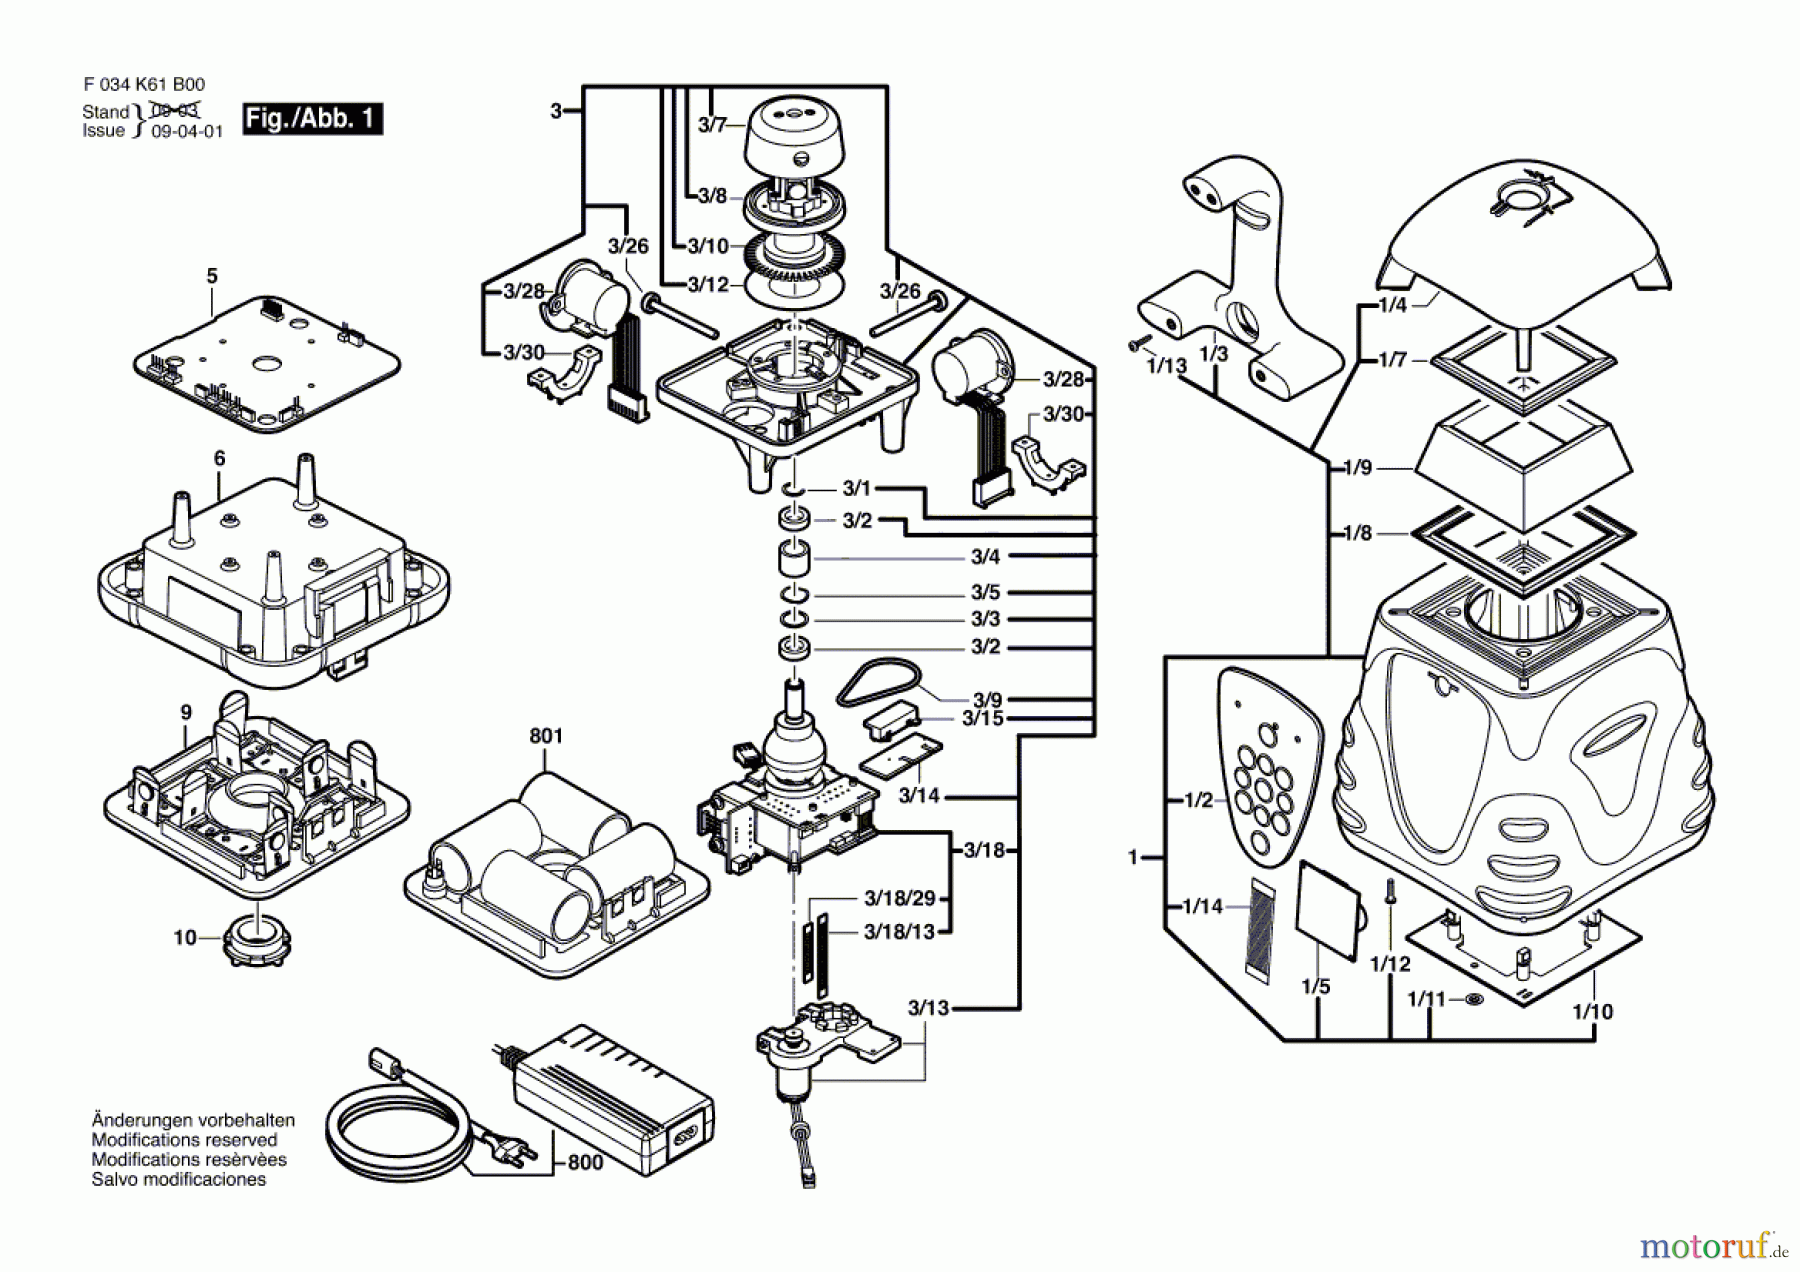  Bosch Werkzeug Baulaser ALHVG Seite 1